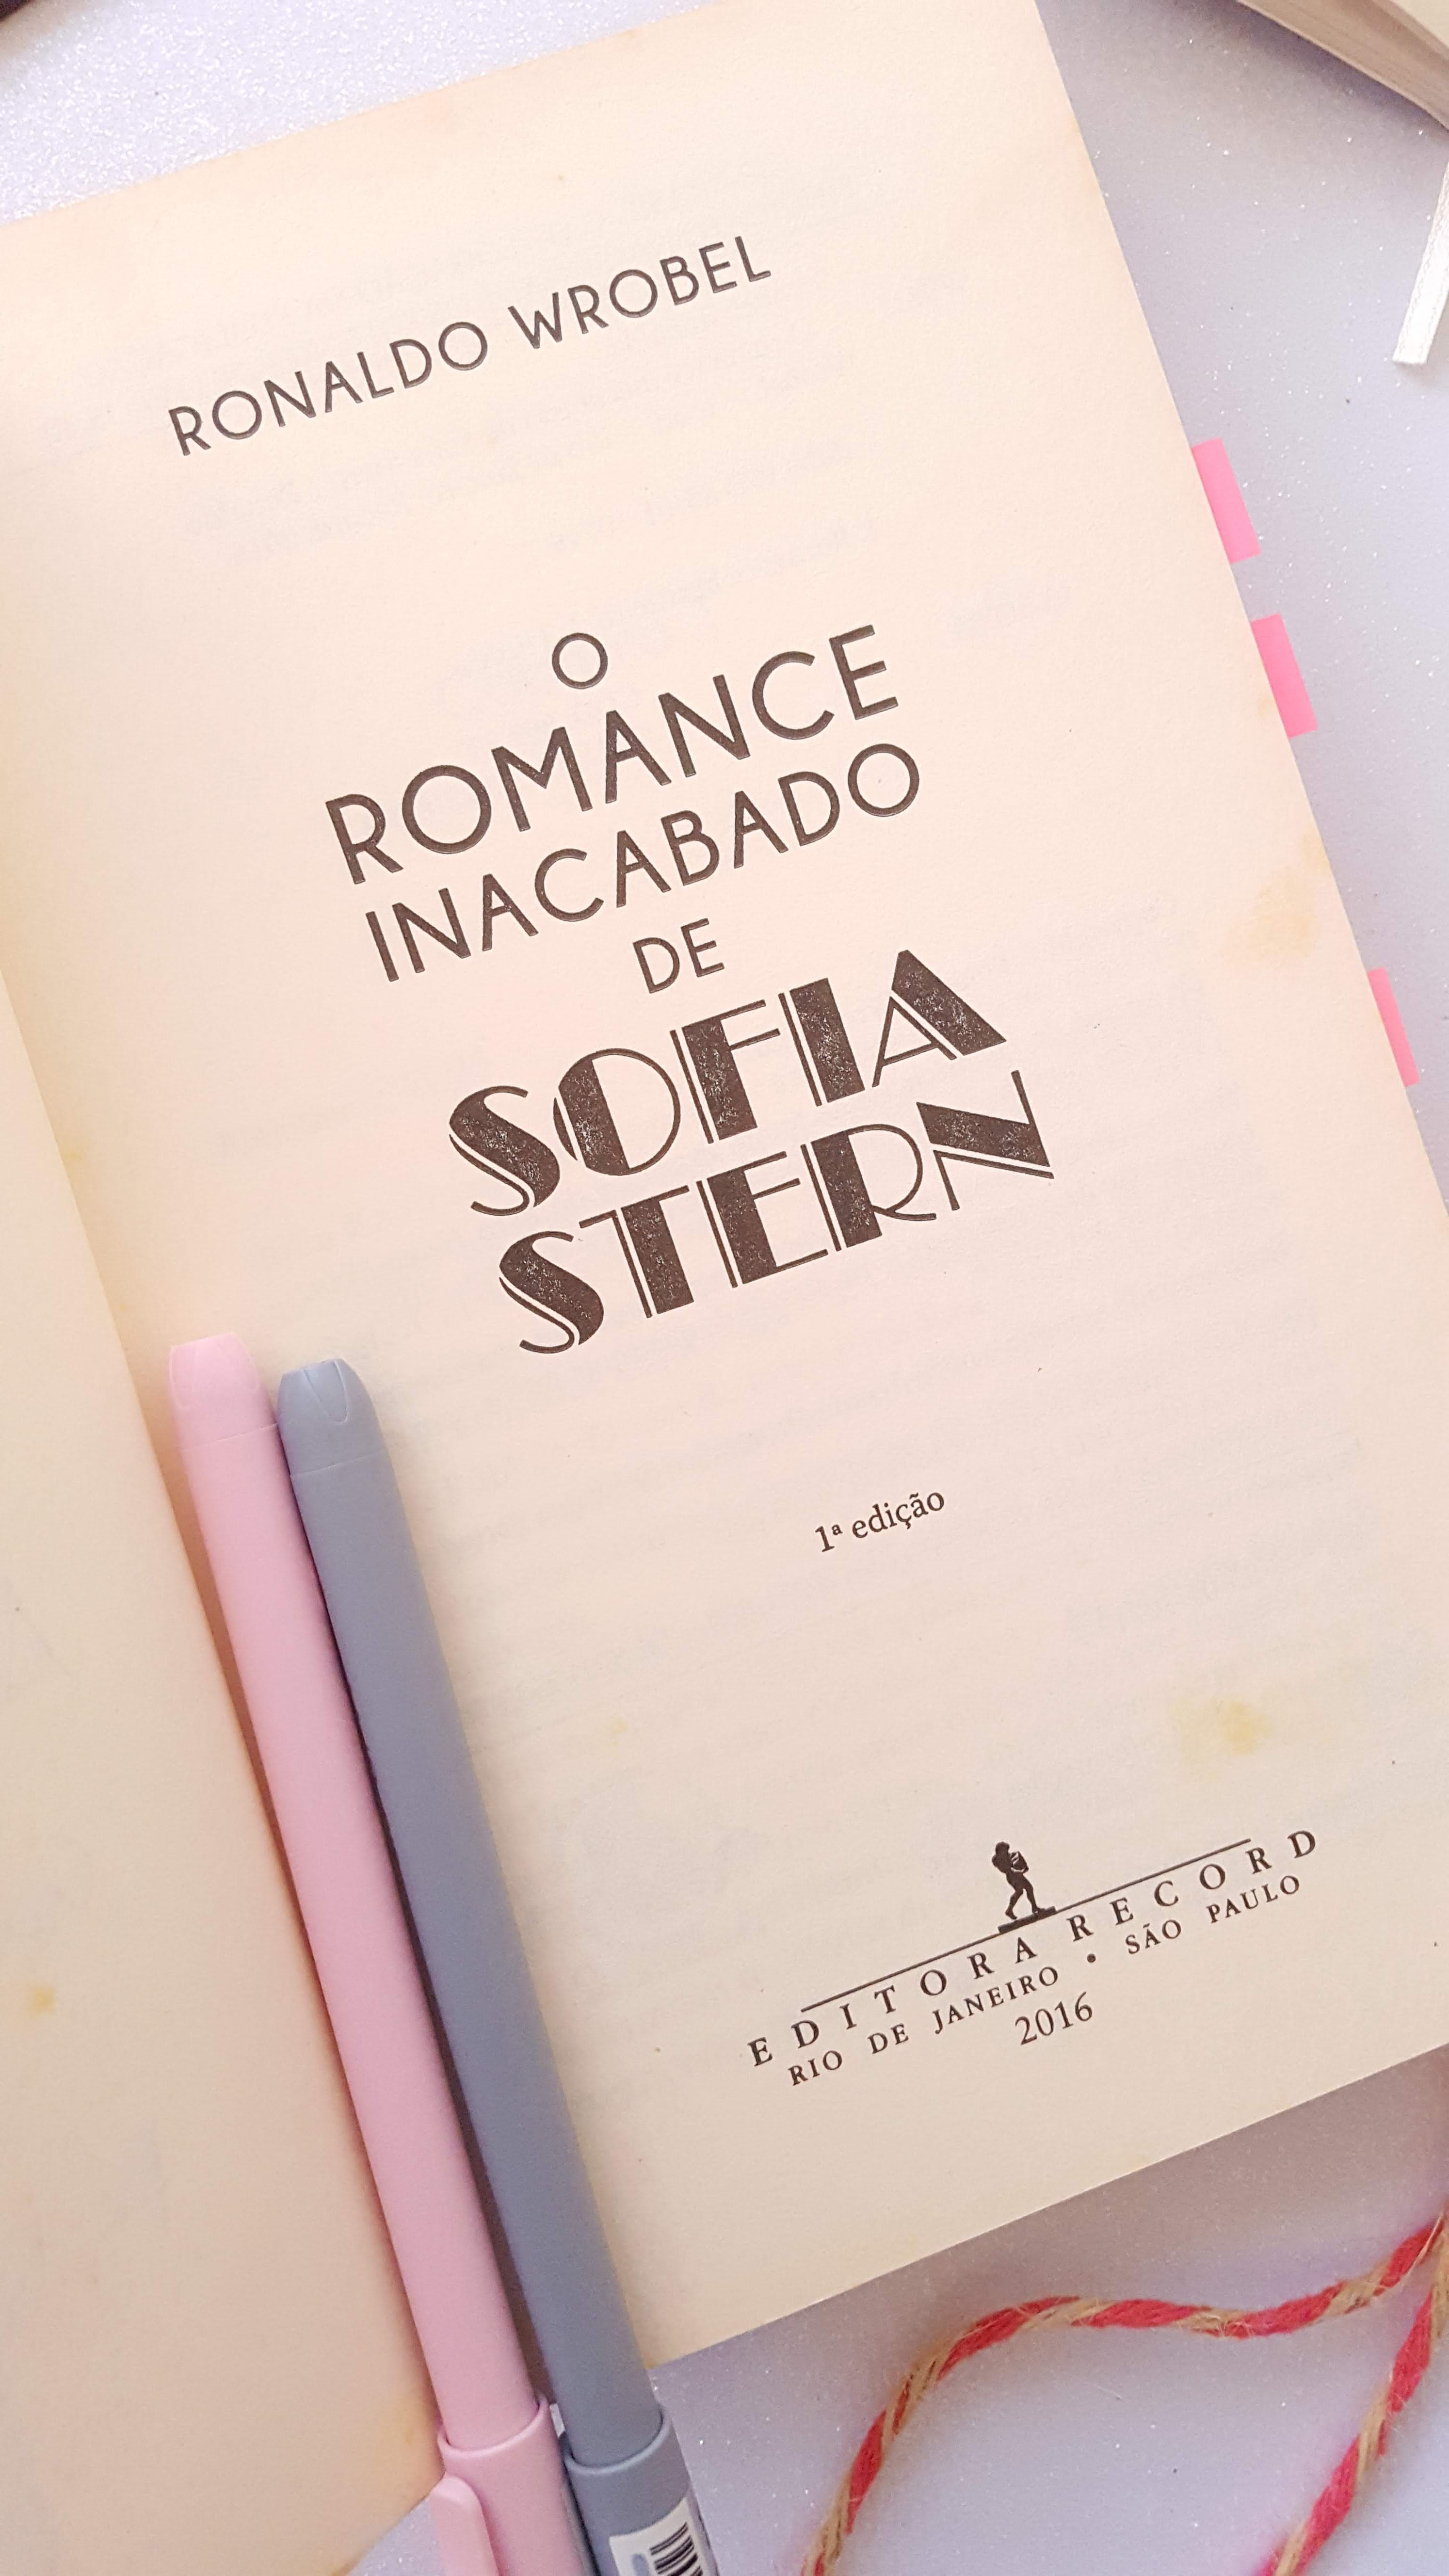 O Romance Inacabado de Sofia Stern | Ronaldo Wrobel